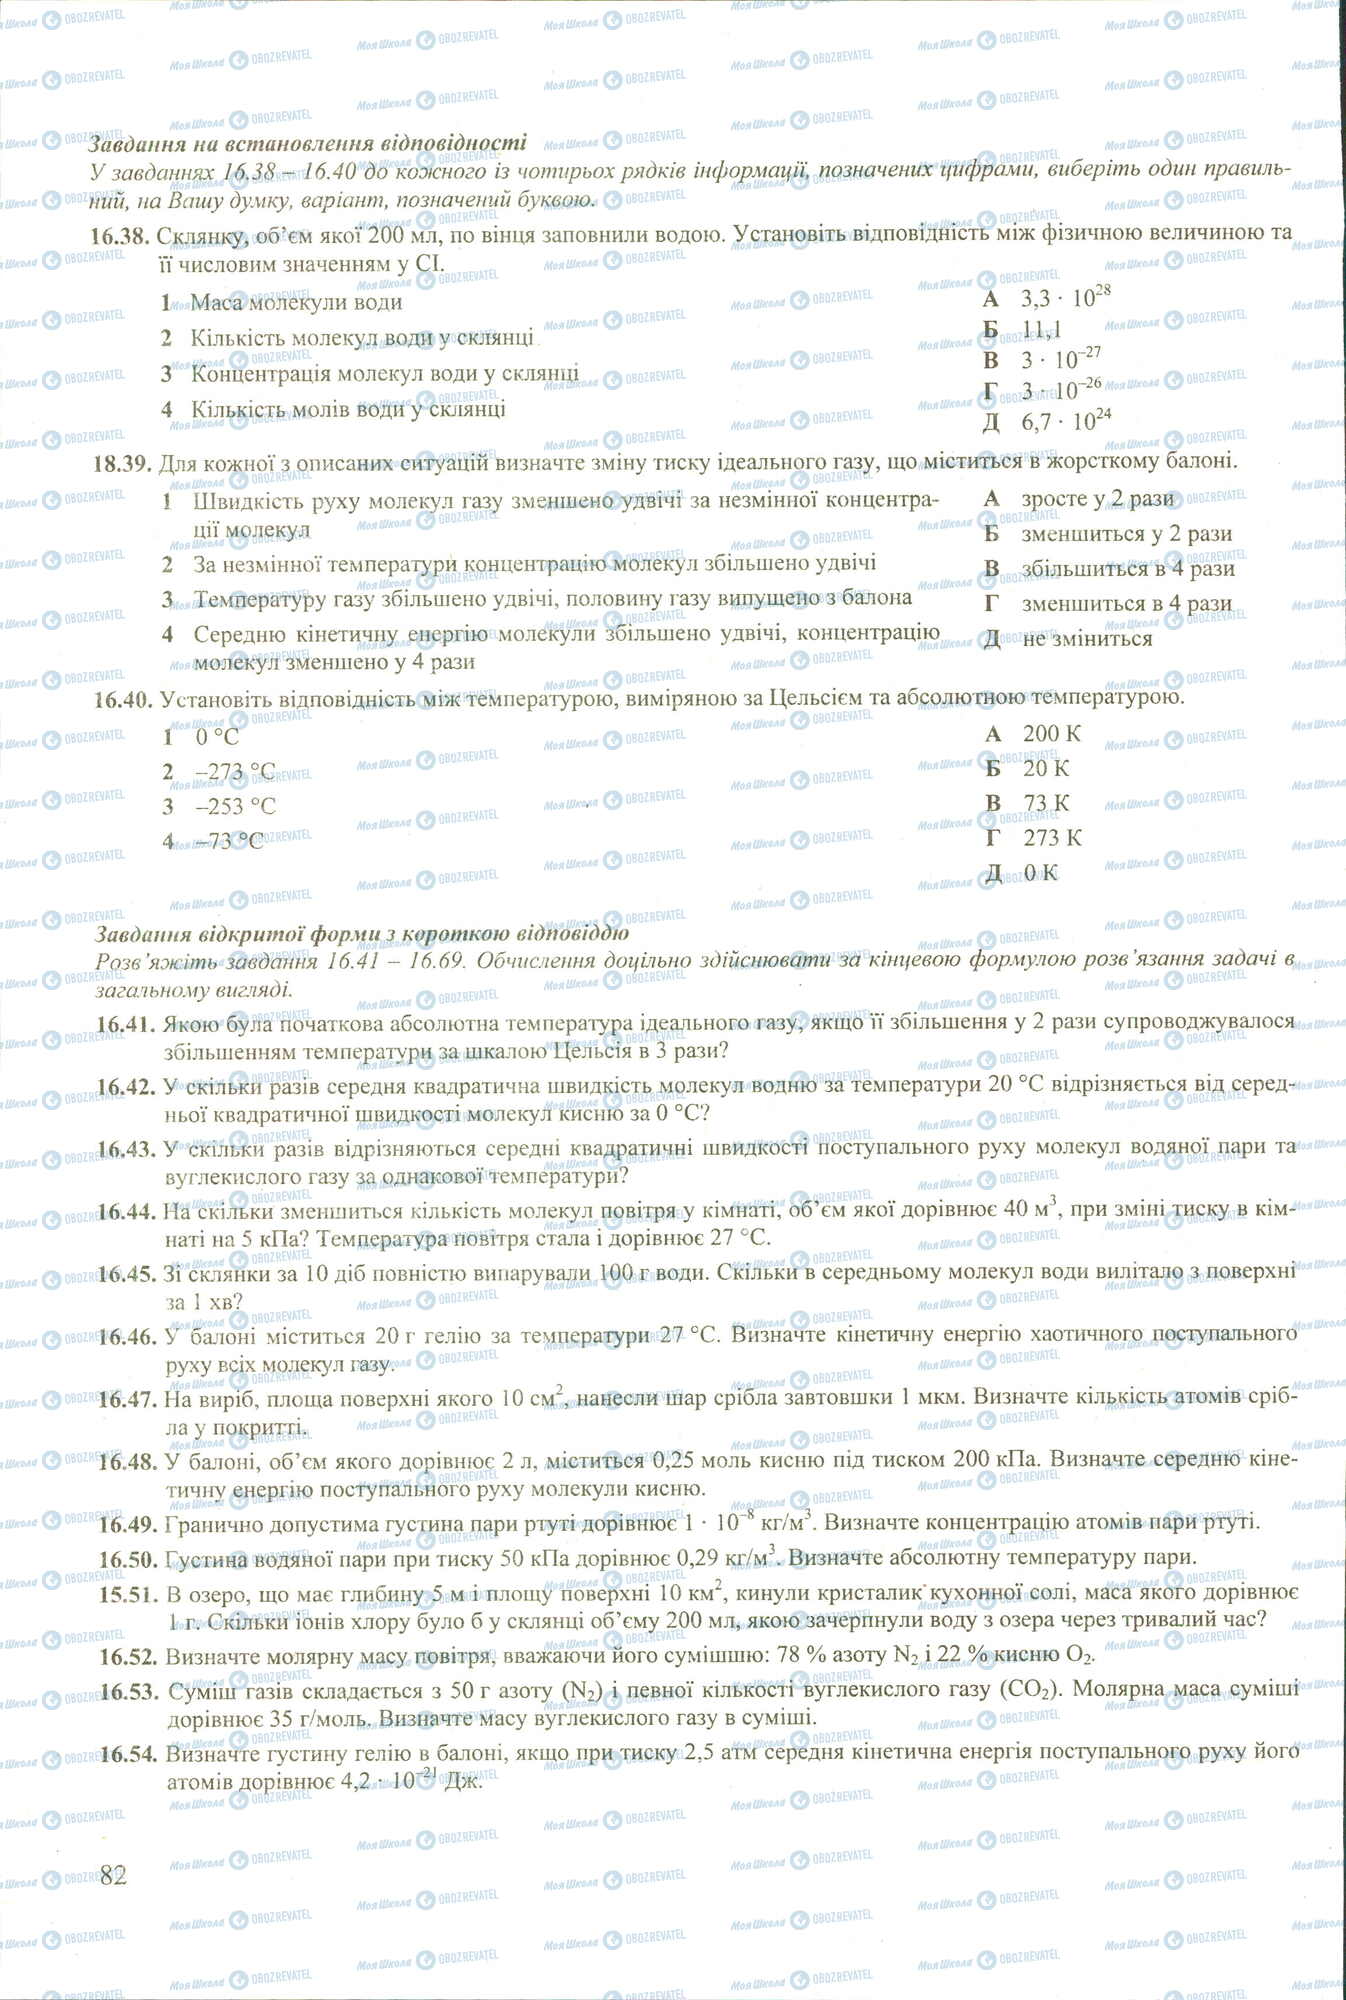 ЗНО Физика 11 класс страница 38-54